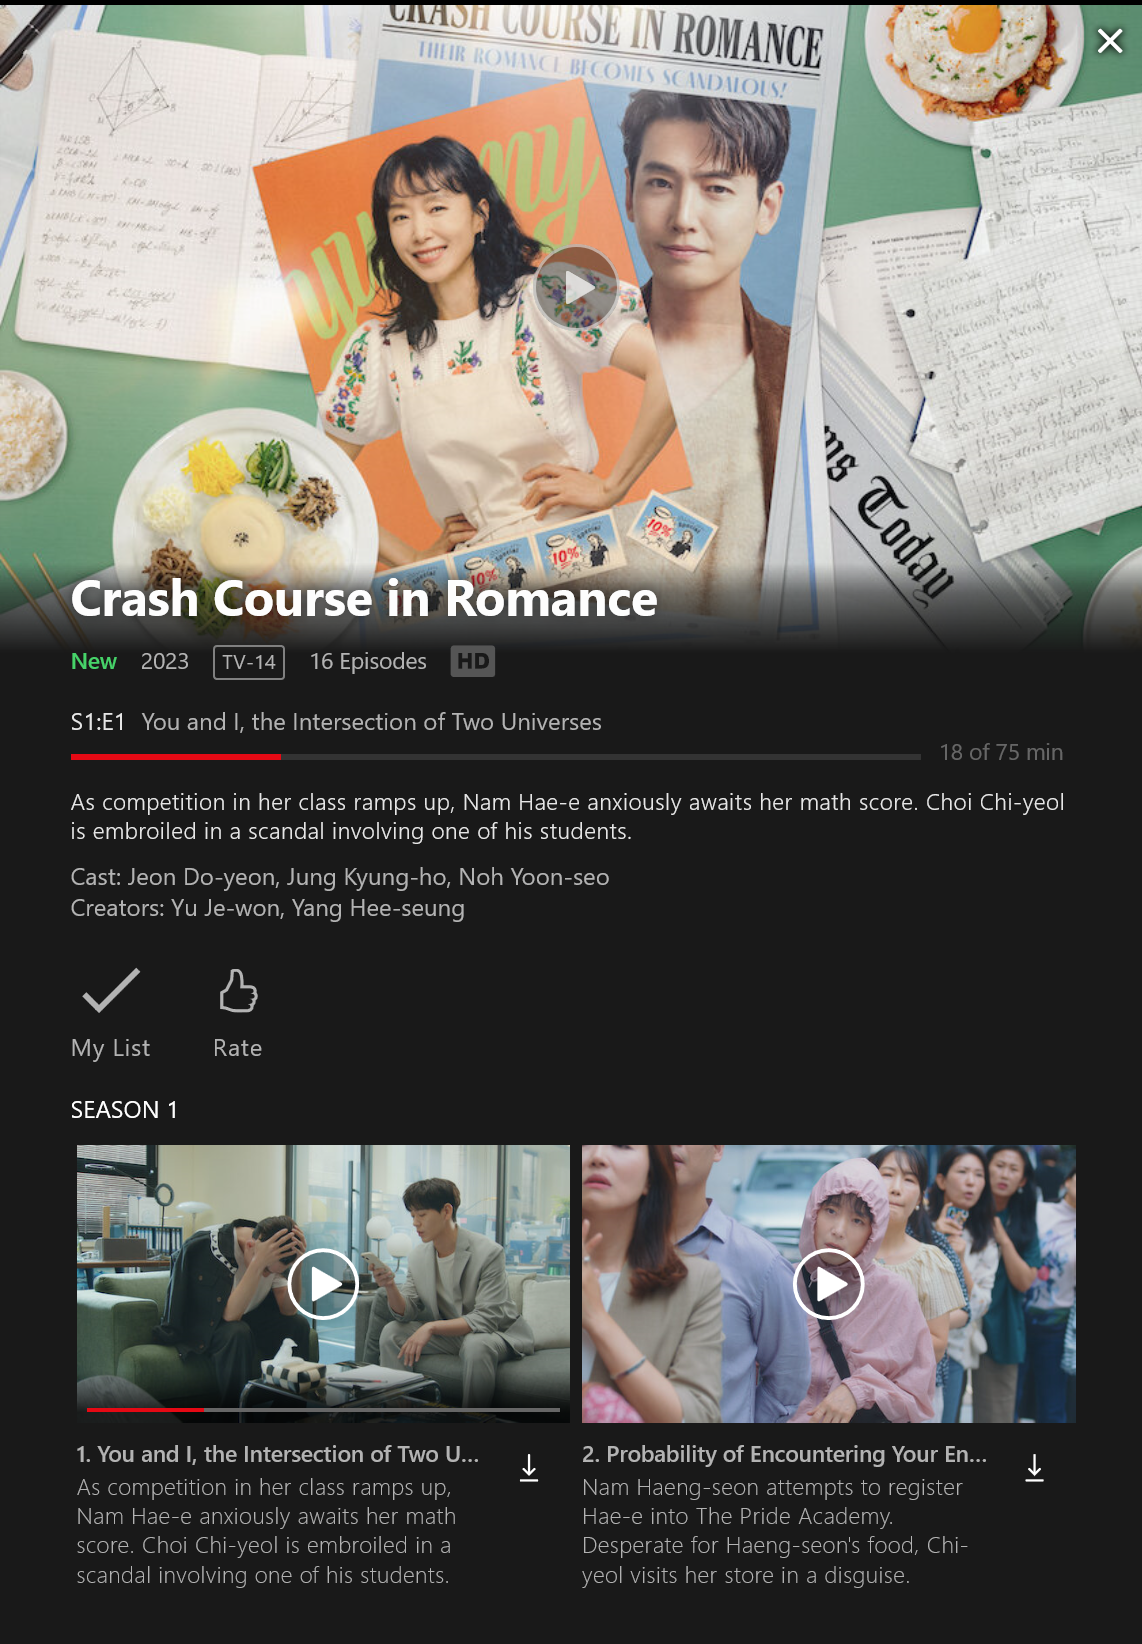 넷플릭스 최신한국드라마 일타스캔들(Crash Course in Romance) 스트리밍 시작